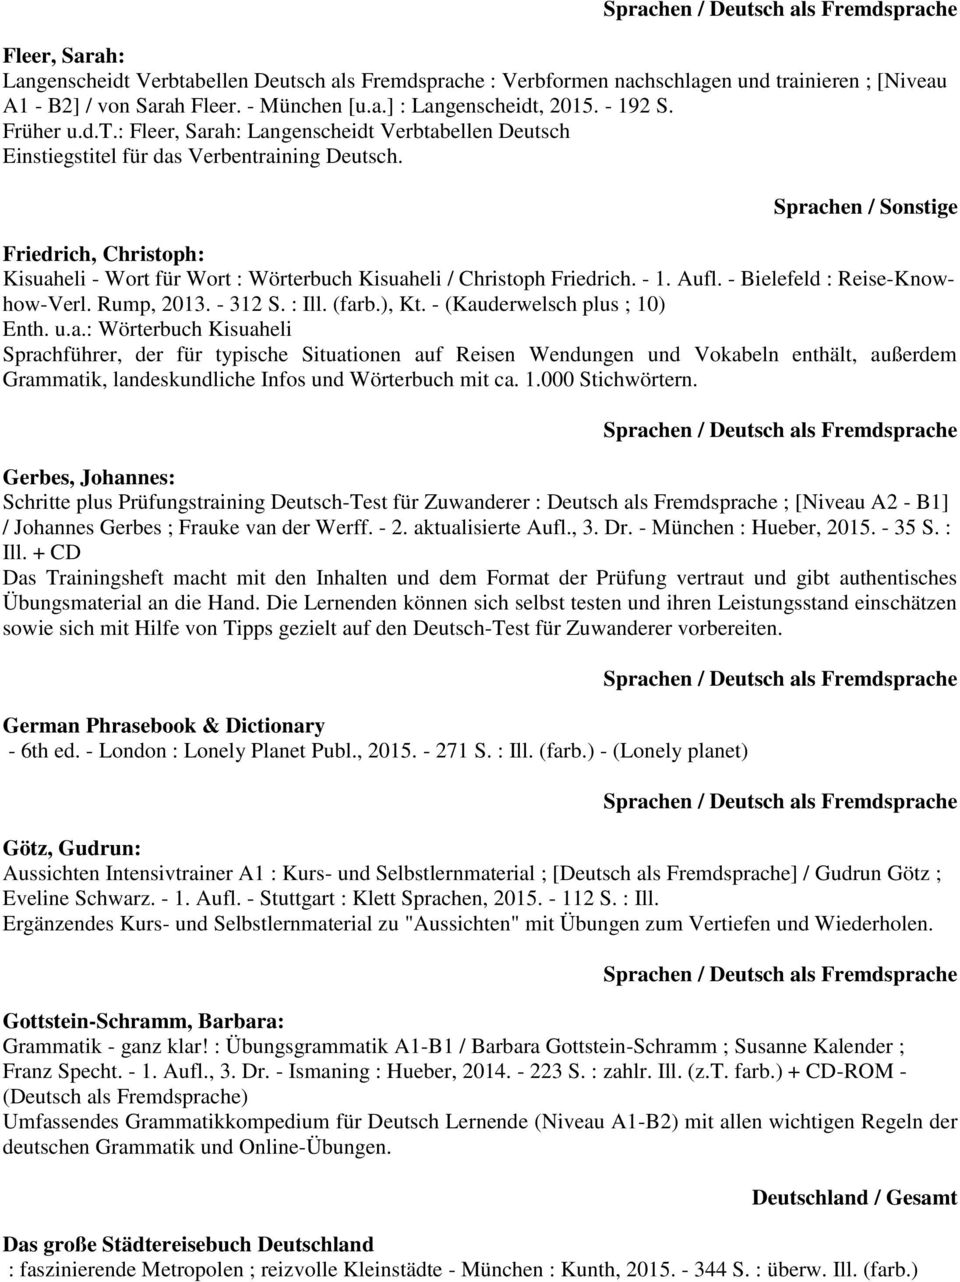 Friedrich, Christoph: Kisuaheli - Wort für Wort : Wörterbuch Kisuaheli / Christoph Friedrich. - 1. Aufl. - Bielefeld : Reise-Knowhow-Verl. Rump, 2013. - 312 S. : Ill. (farb.), Kt.